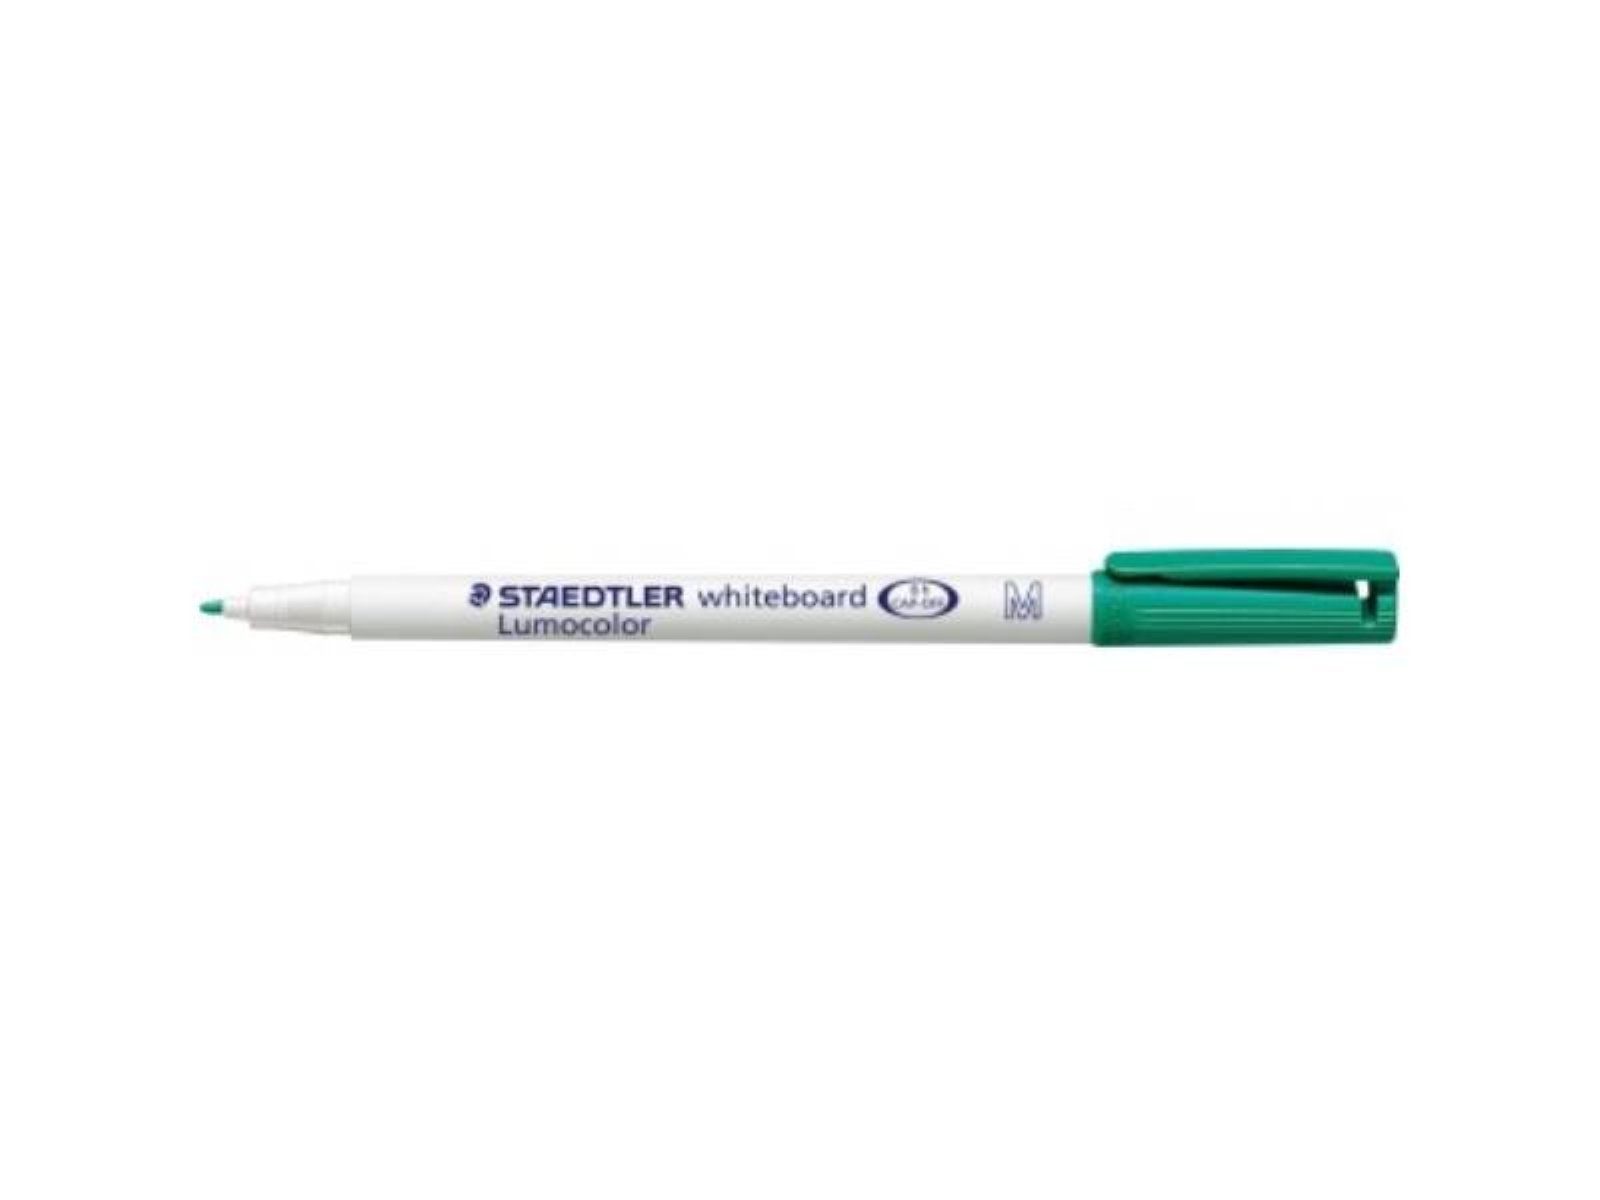 STAEDTLER Marker STAEDTLER 301-5 STAEDTLER® Whiteboardmarker Lumocolor® 301 1mm grü